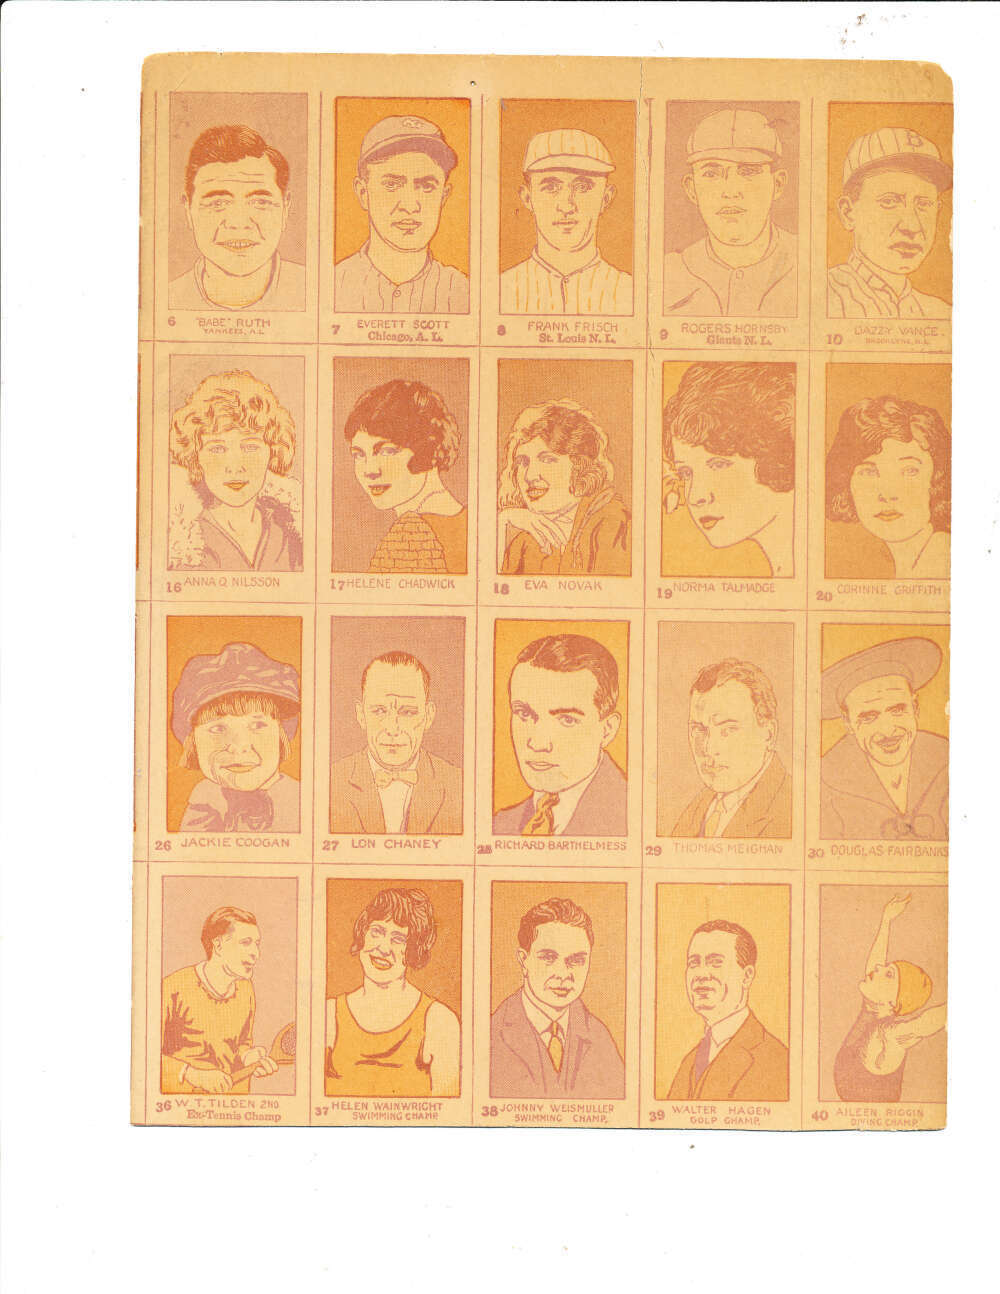 Babe Ruth 1926 w512 Strip card uncut sheet 20 cards